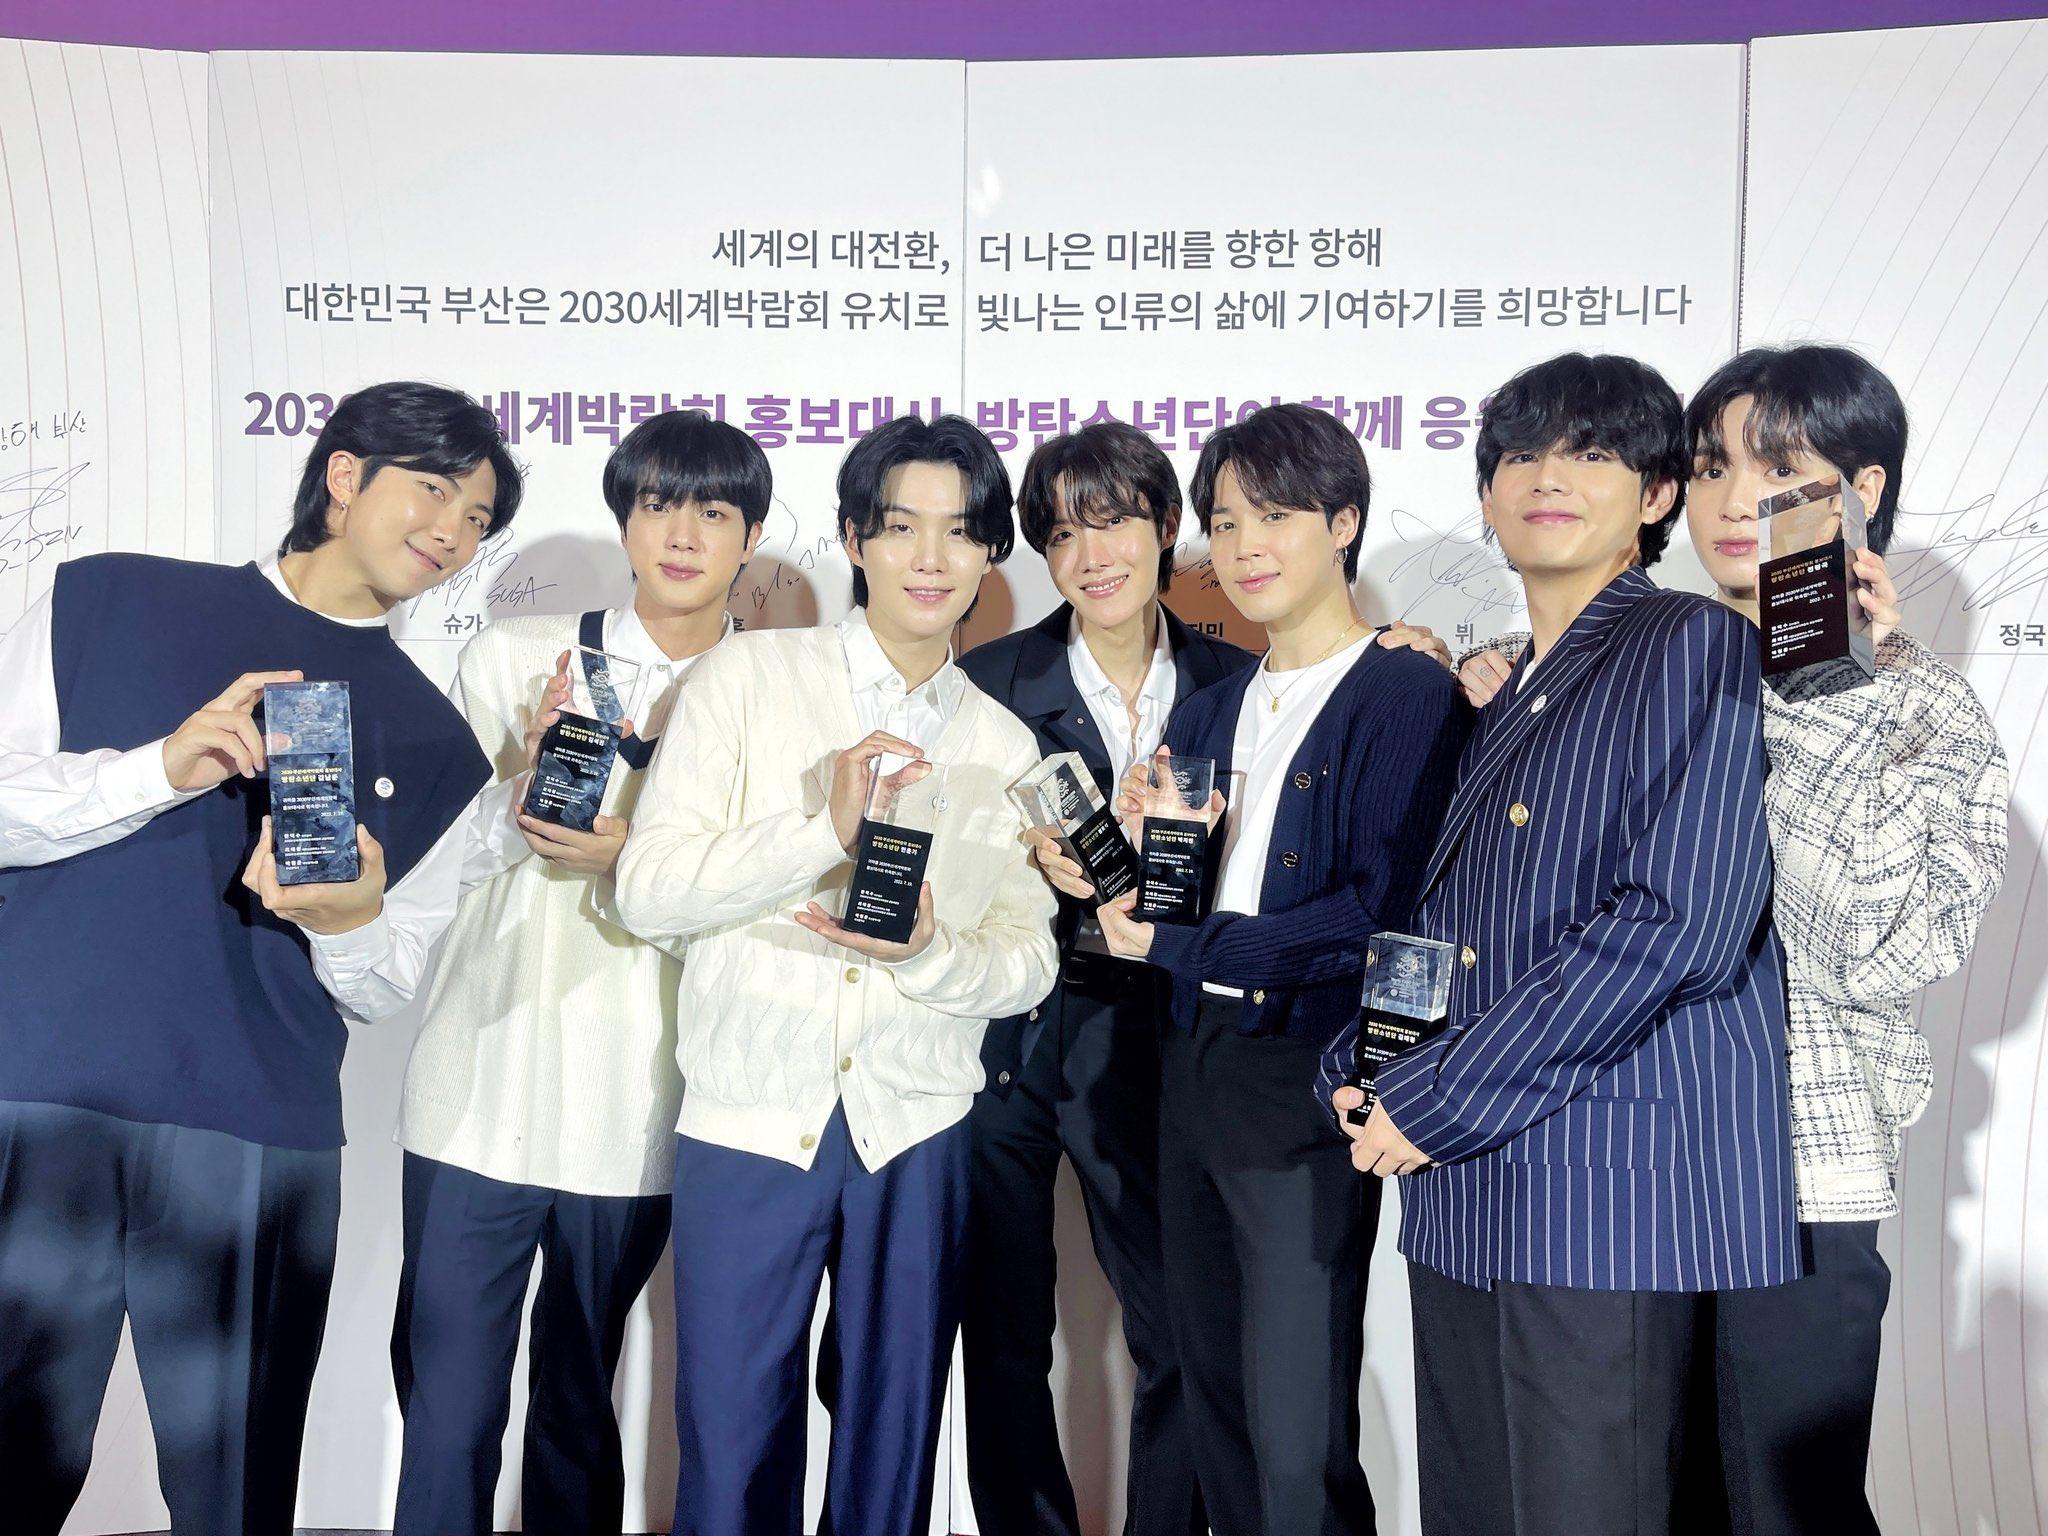 BTS trở thành đại sứ và sẽ biểu diễn concert tại Busan với hy vọng giúp Hàn Quốc đăng cai tổ chức Hội chợ triển lãm Thế giới 2030 tại Busan (Ảnh: Internet)